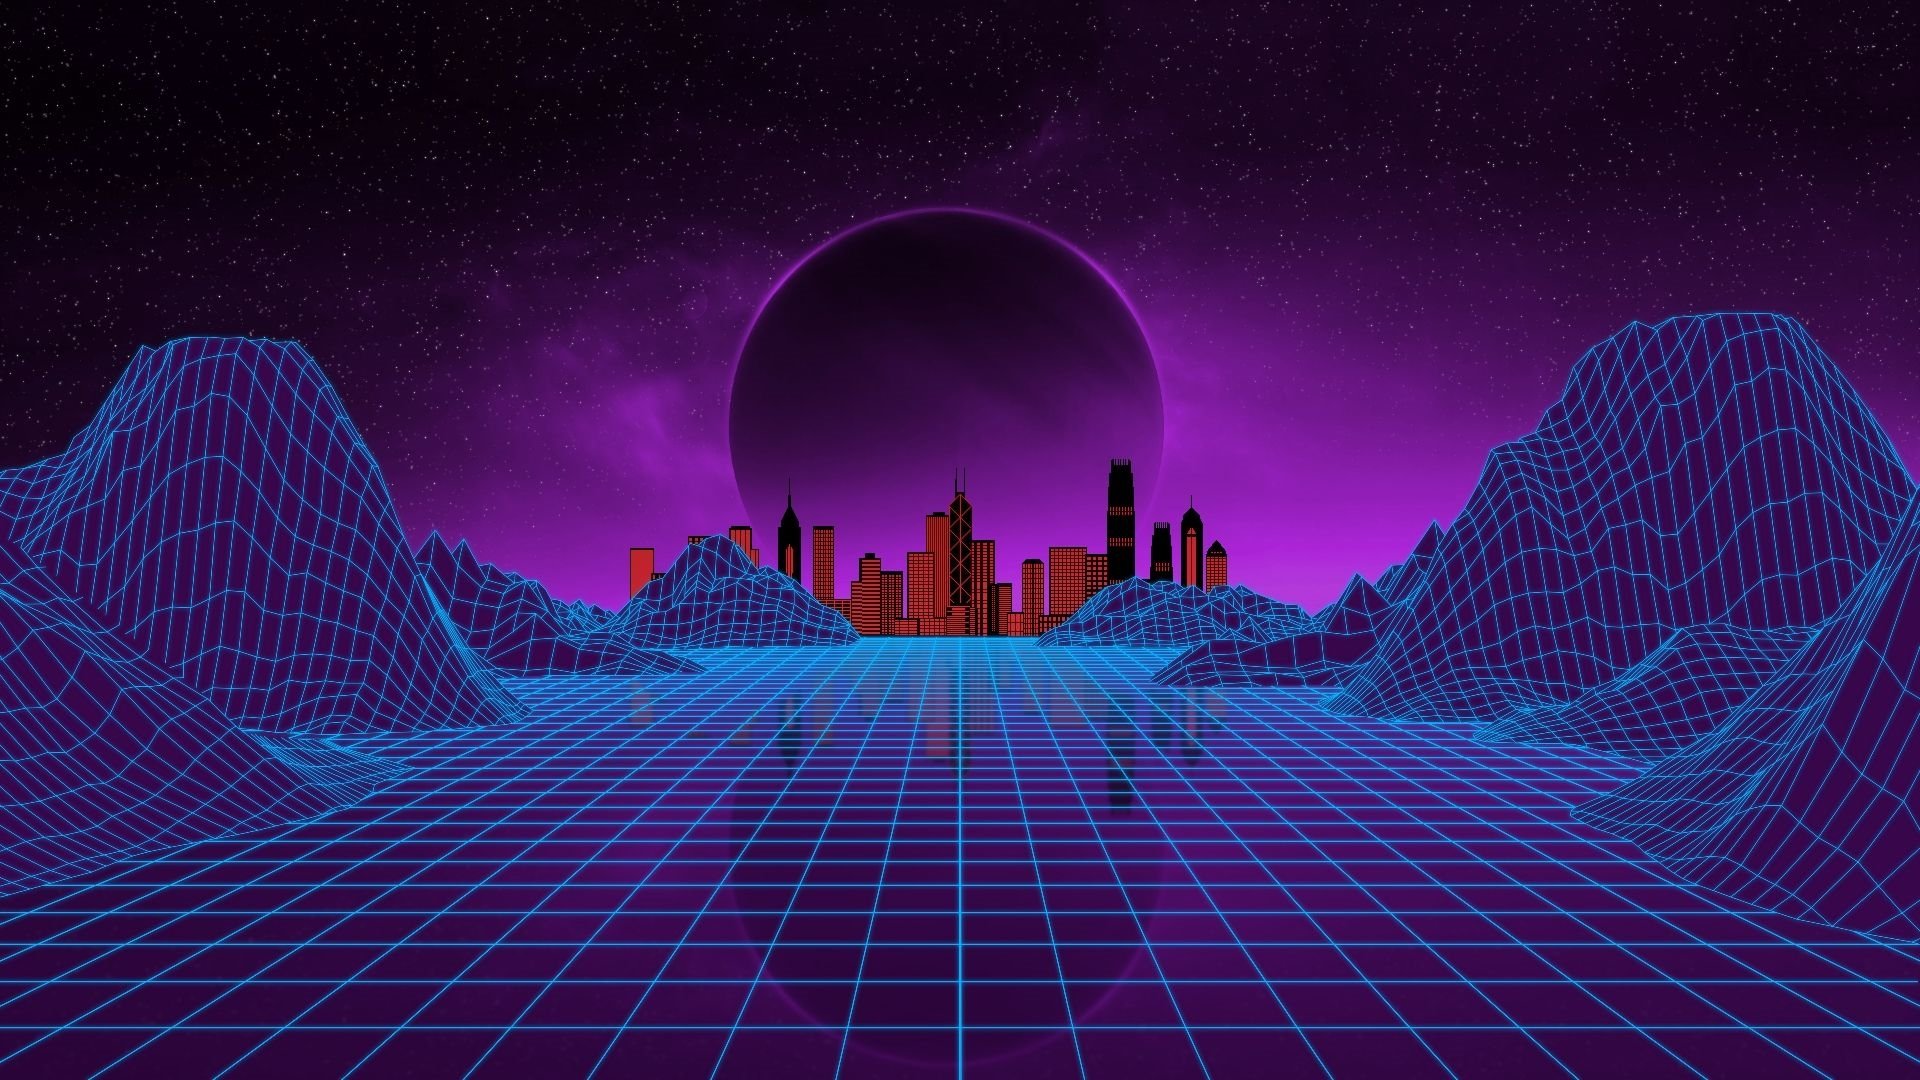 Cyberpunk Wallpaper Cyberpunk 2077 Cyber City Neon The Witcher Geralt  Of Rivia  Wallpaperforu